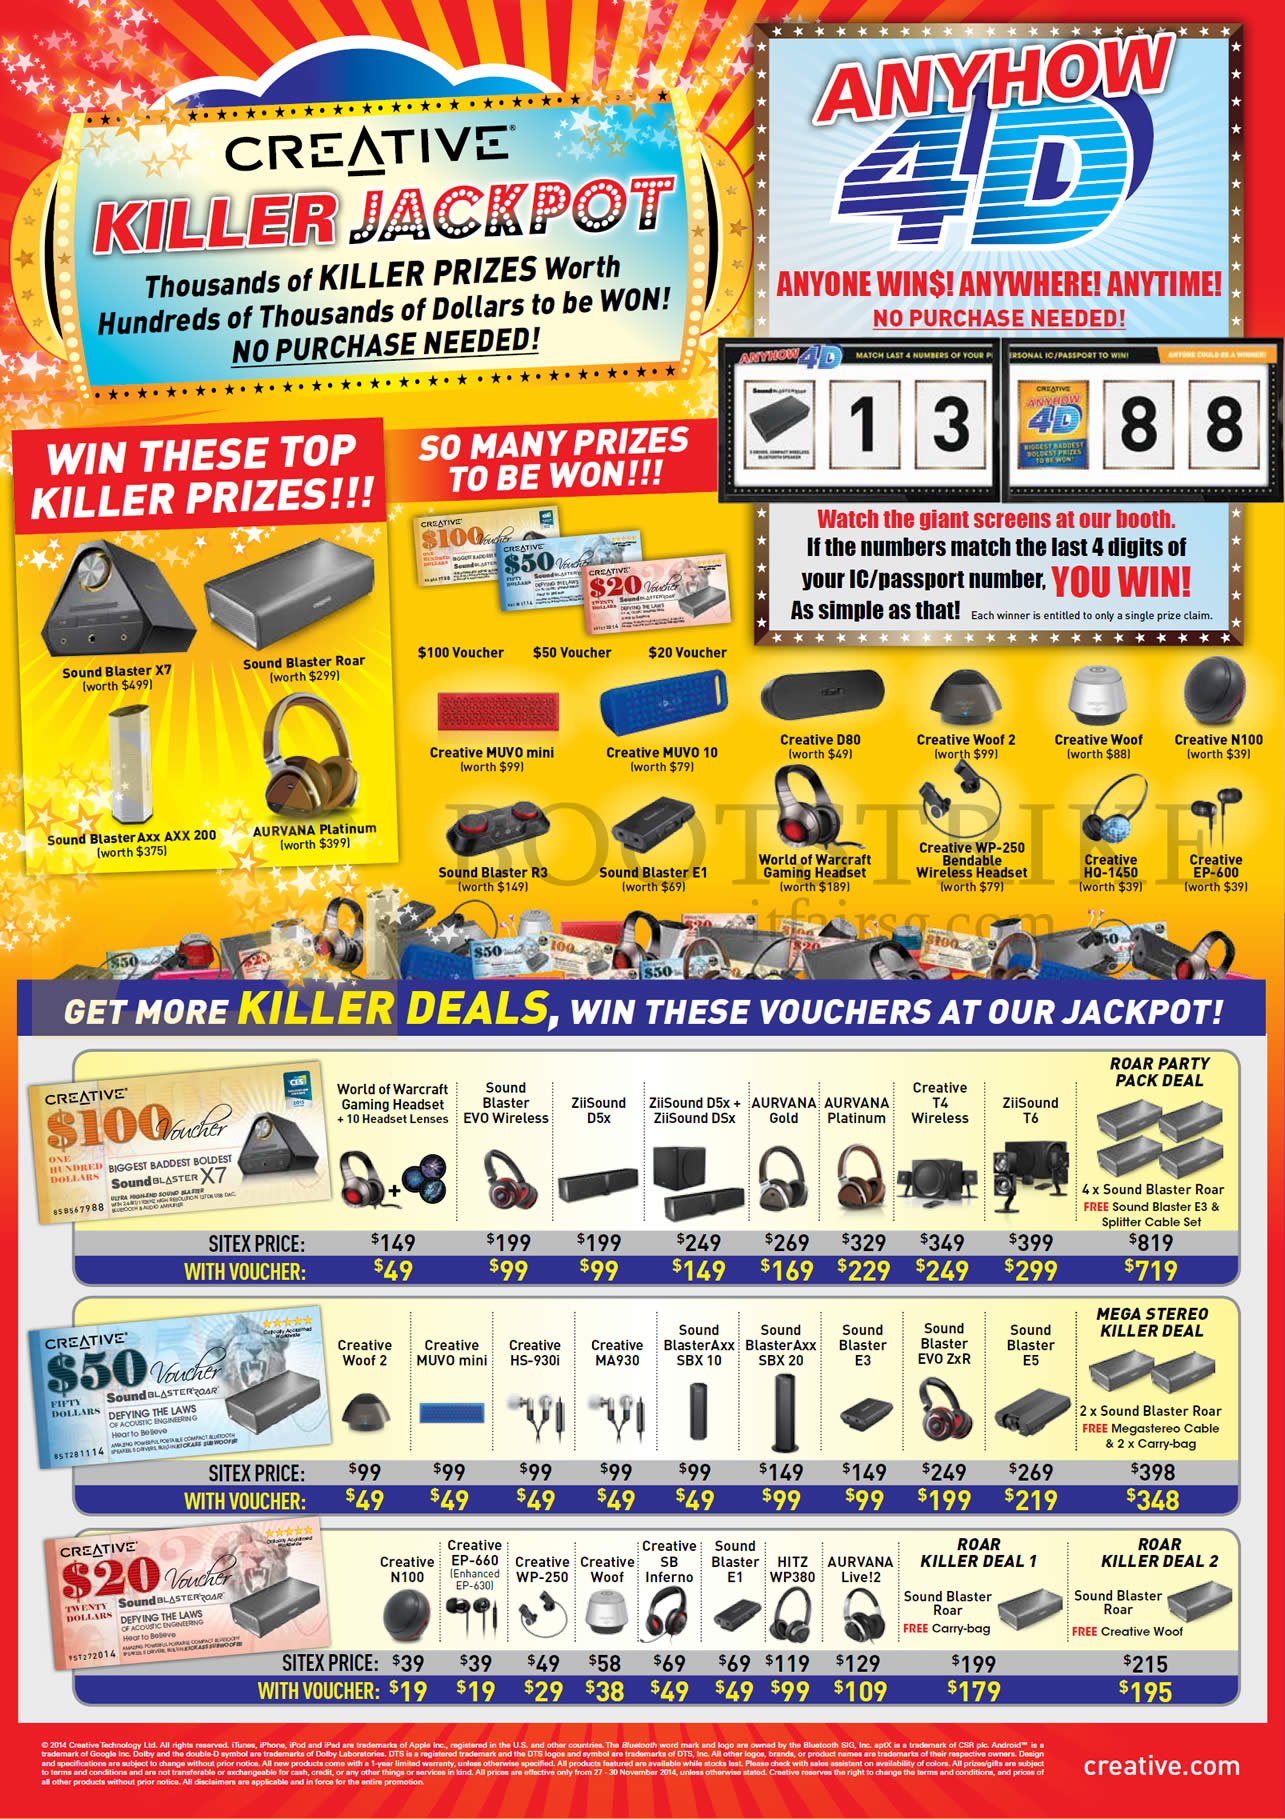 SITEX 2014 price list image brochure of Creative Jackpot Prizes, Voucher Offers, Headphones, Speakers, Earphones, Sound Blaster Roar